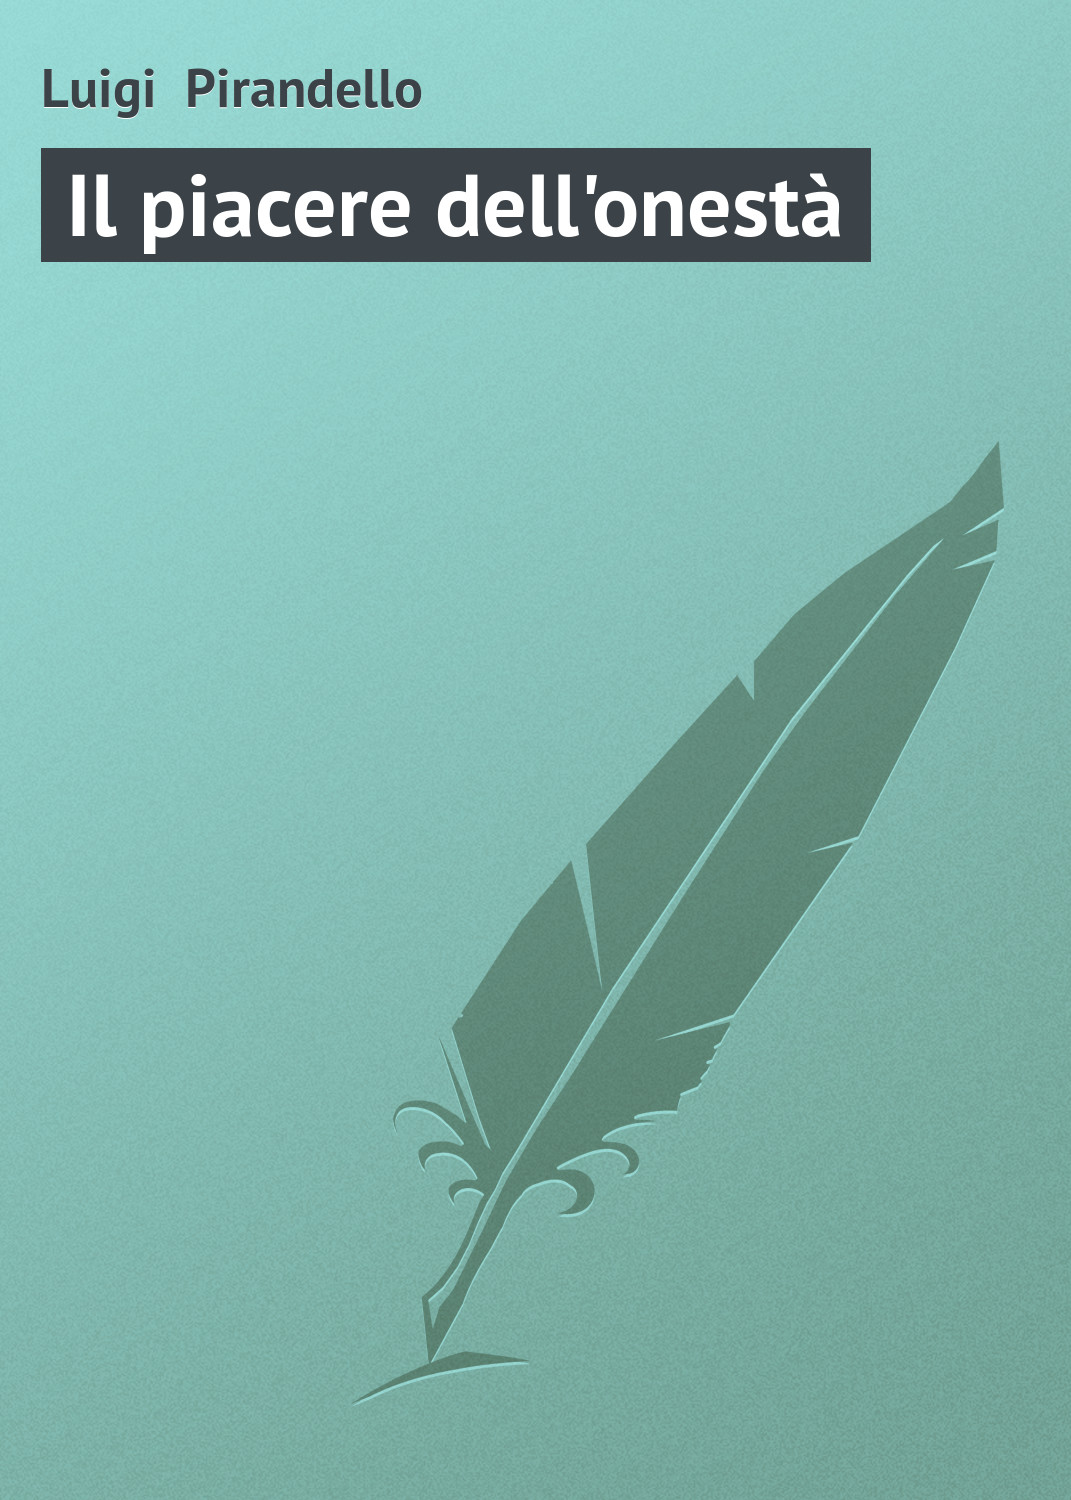 Книга Il piacere dell'onestà из серии , созданная Luigi Pirandello, может относится к жанру Зарубежная старинная литература, Зарубежная классика. Стоимость электронной книги Il piacere dell'onestà с идентификатором 21103774 составляет 5.99 руб.